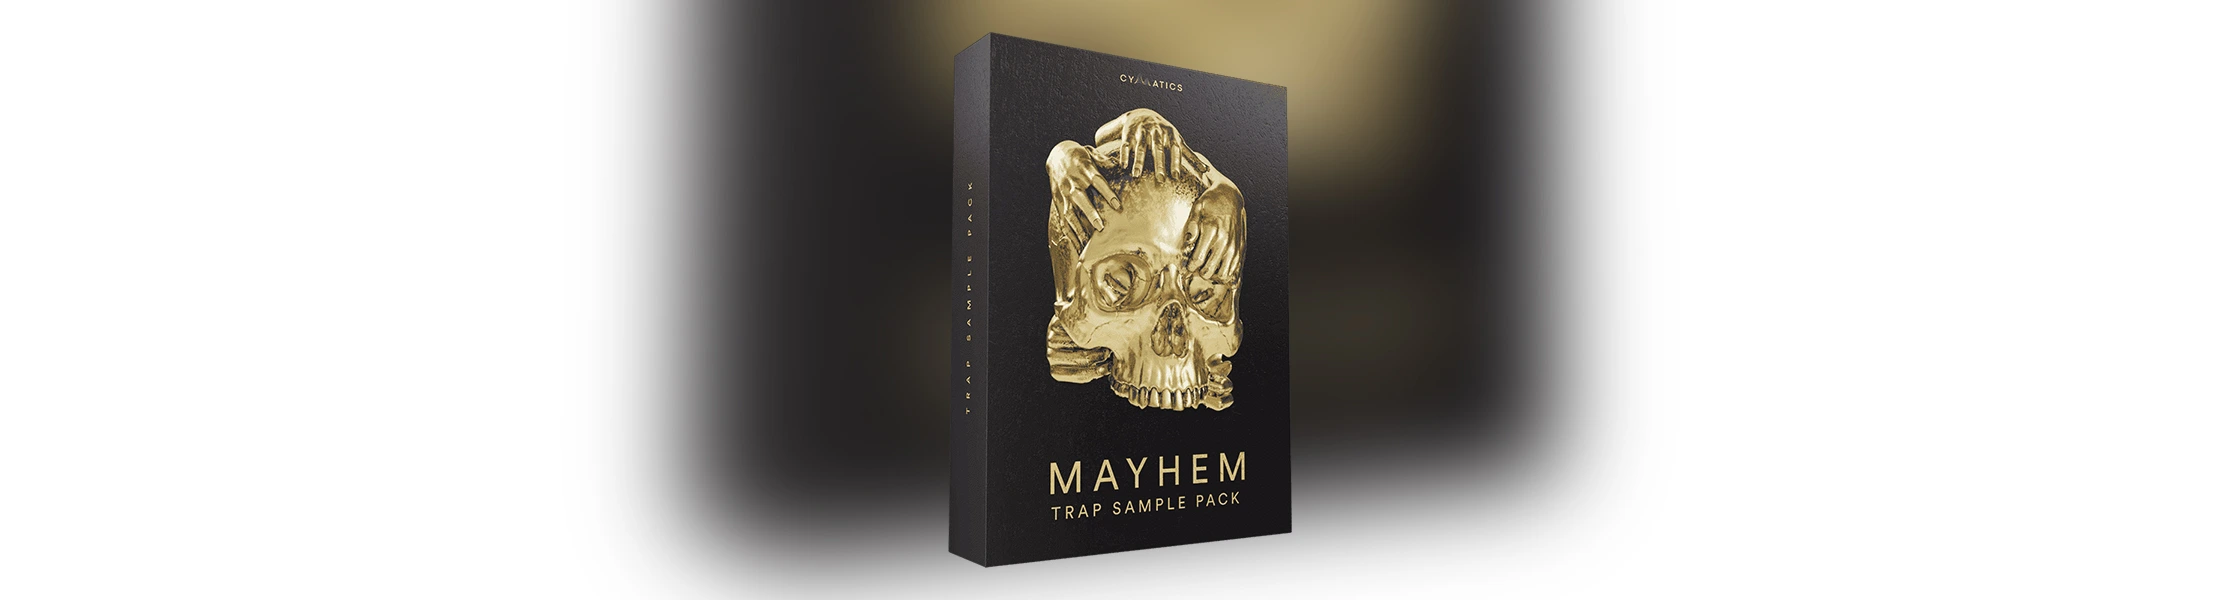 Cymatics MAYHEM USB Sample Pack